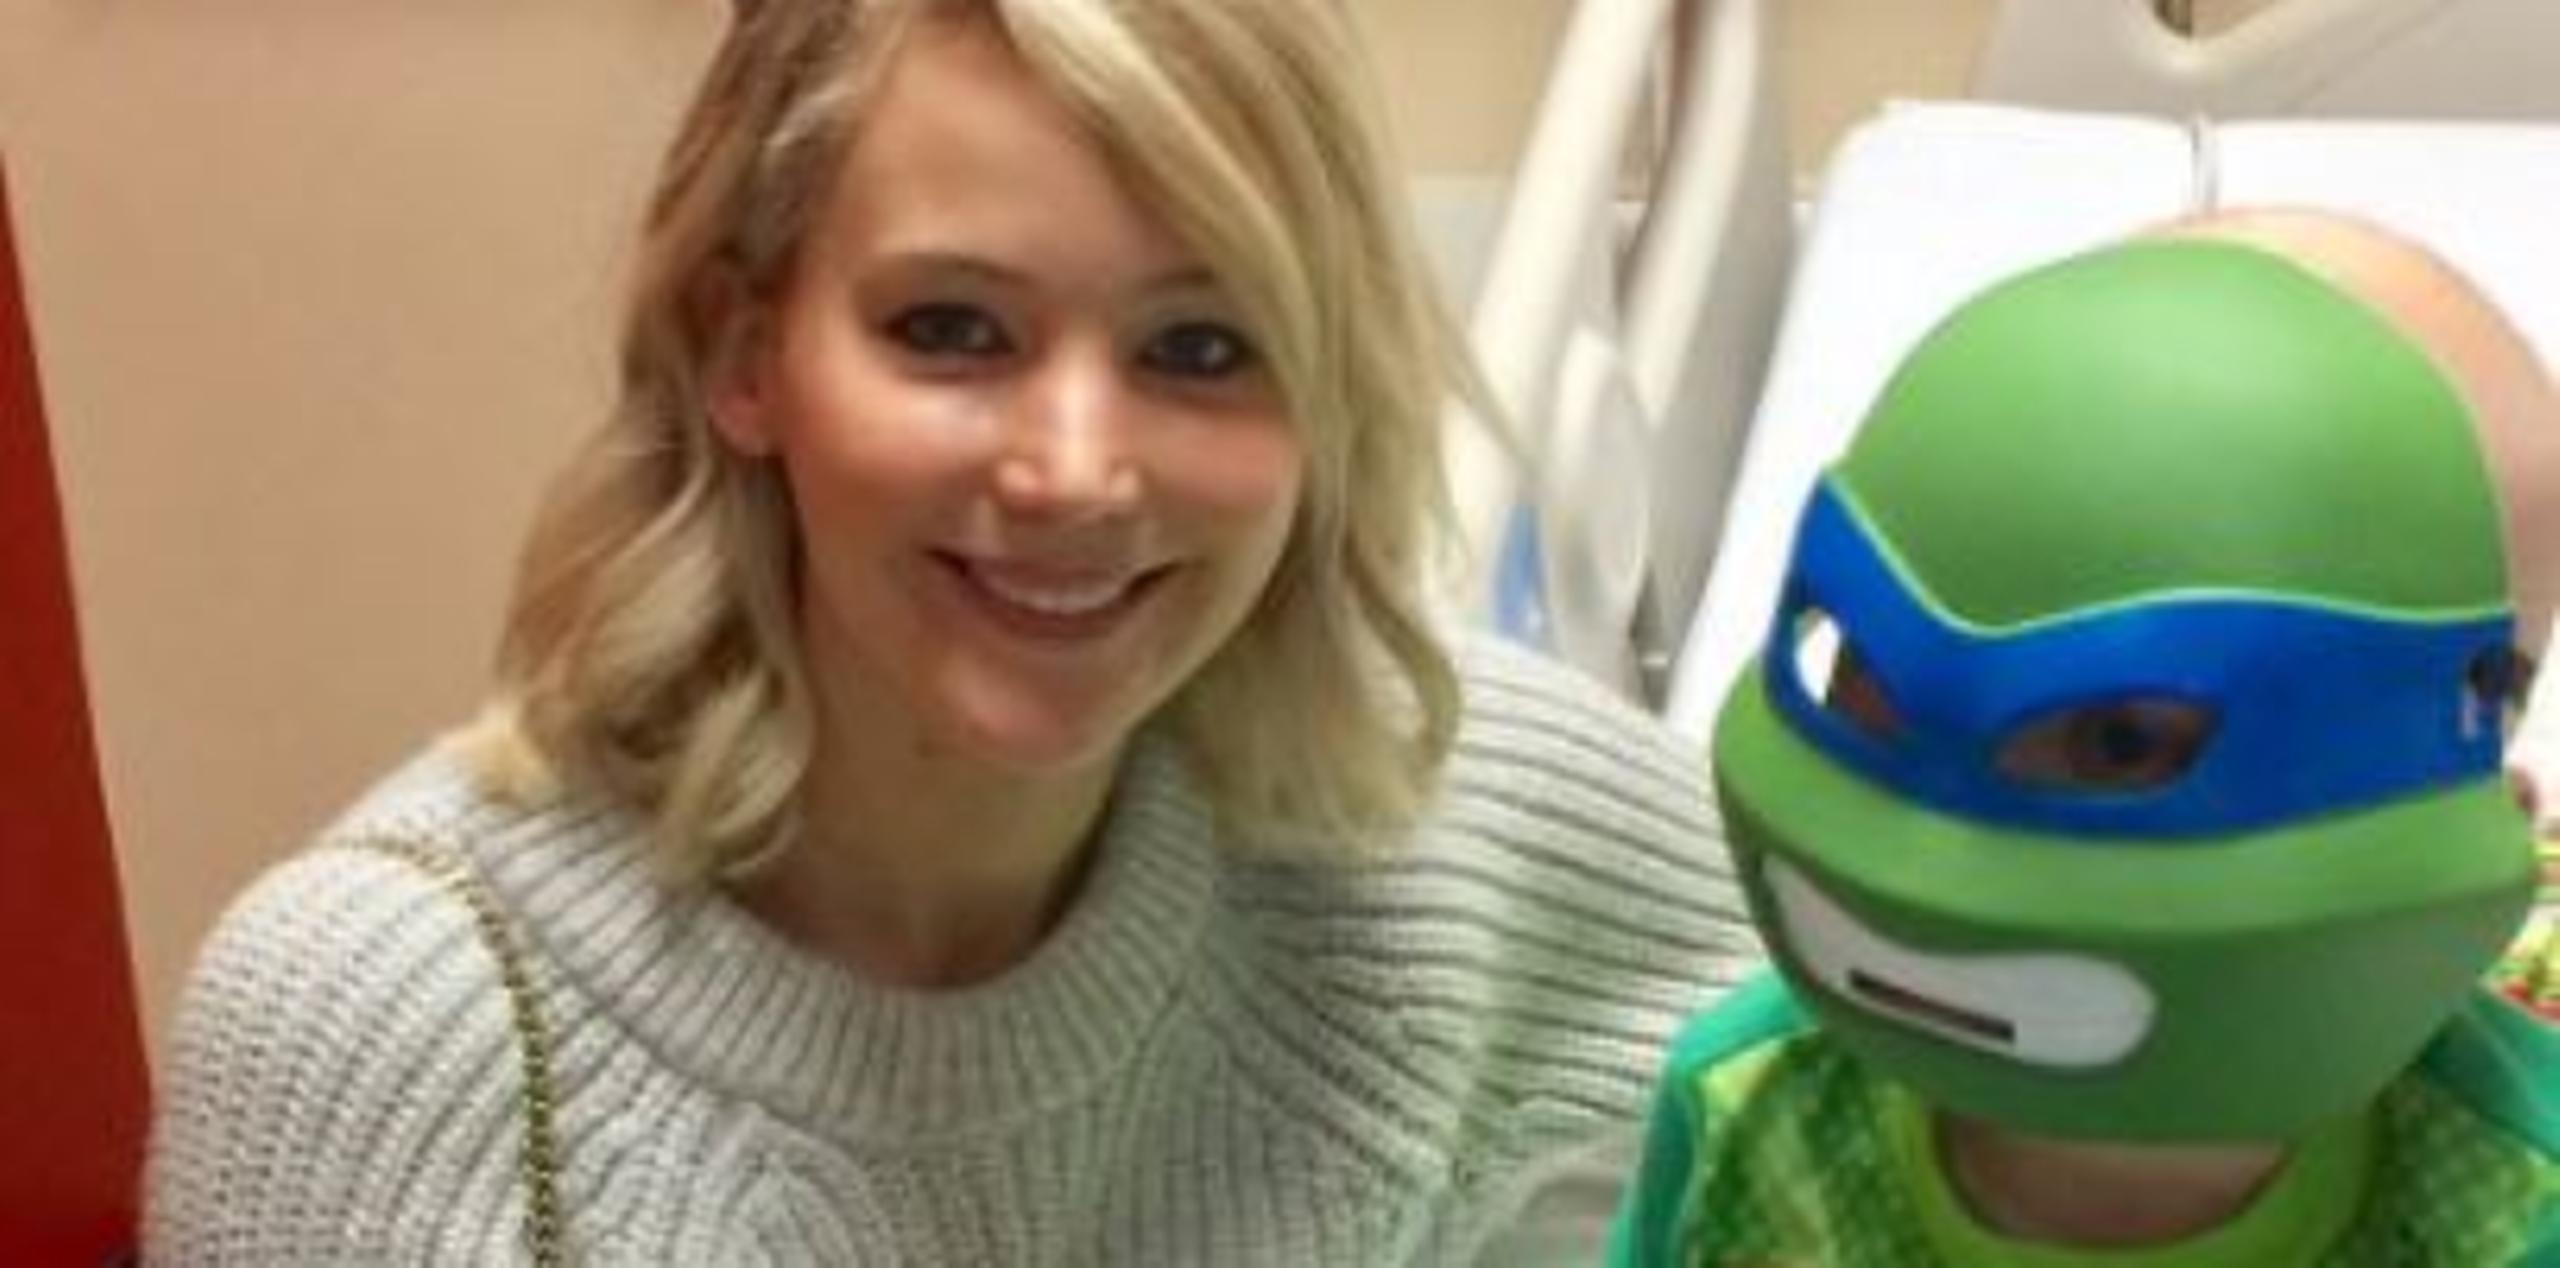 Personas particulares colocaron fotos en las redes sociales, incluyendo fotos de Lawrence con un niño disfrazado de un personaje de las Teenage Mutant Ninja Turtles. (Foto/Twitter)